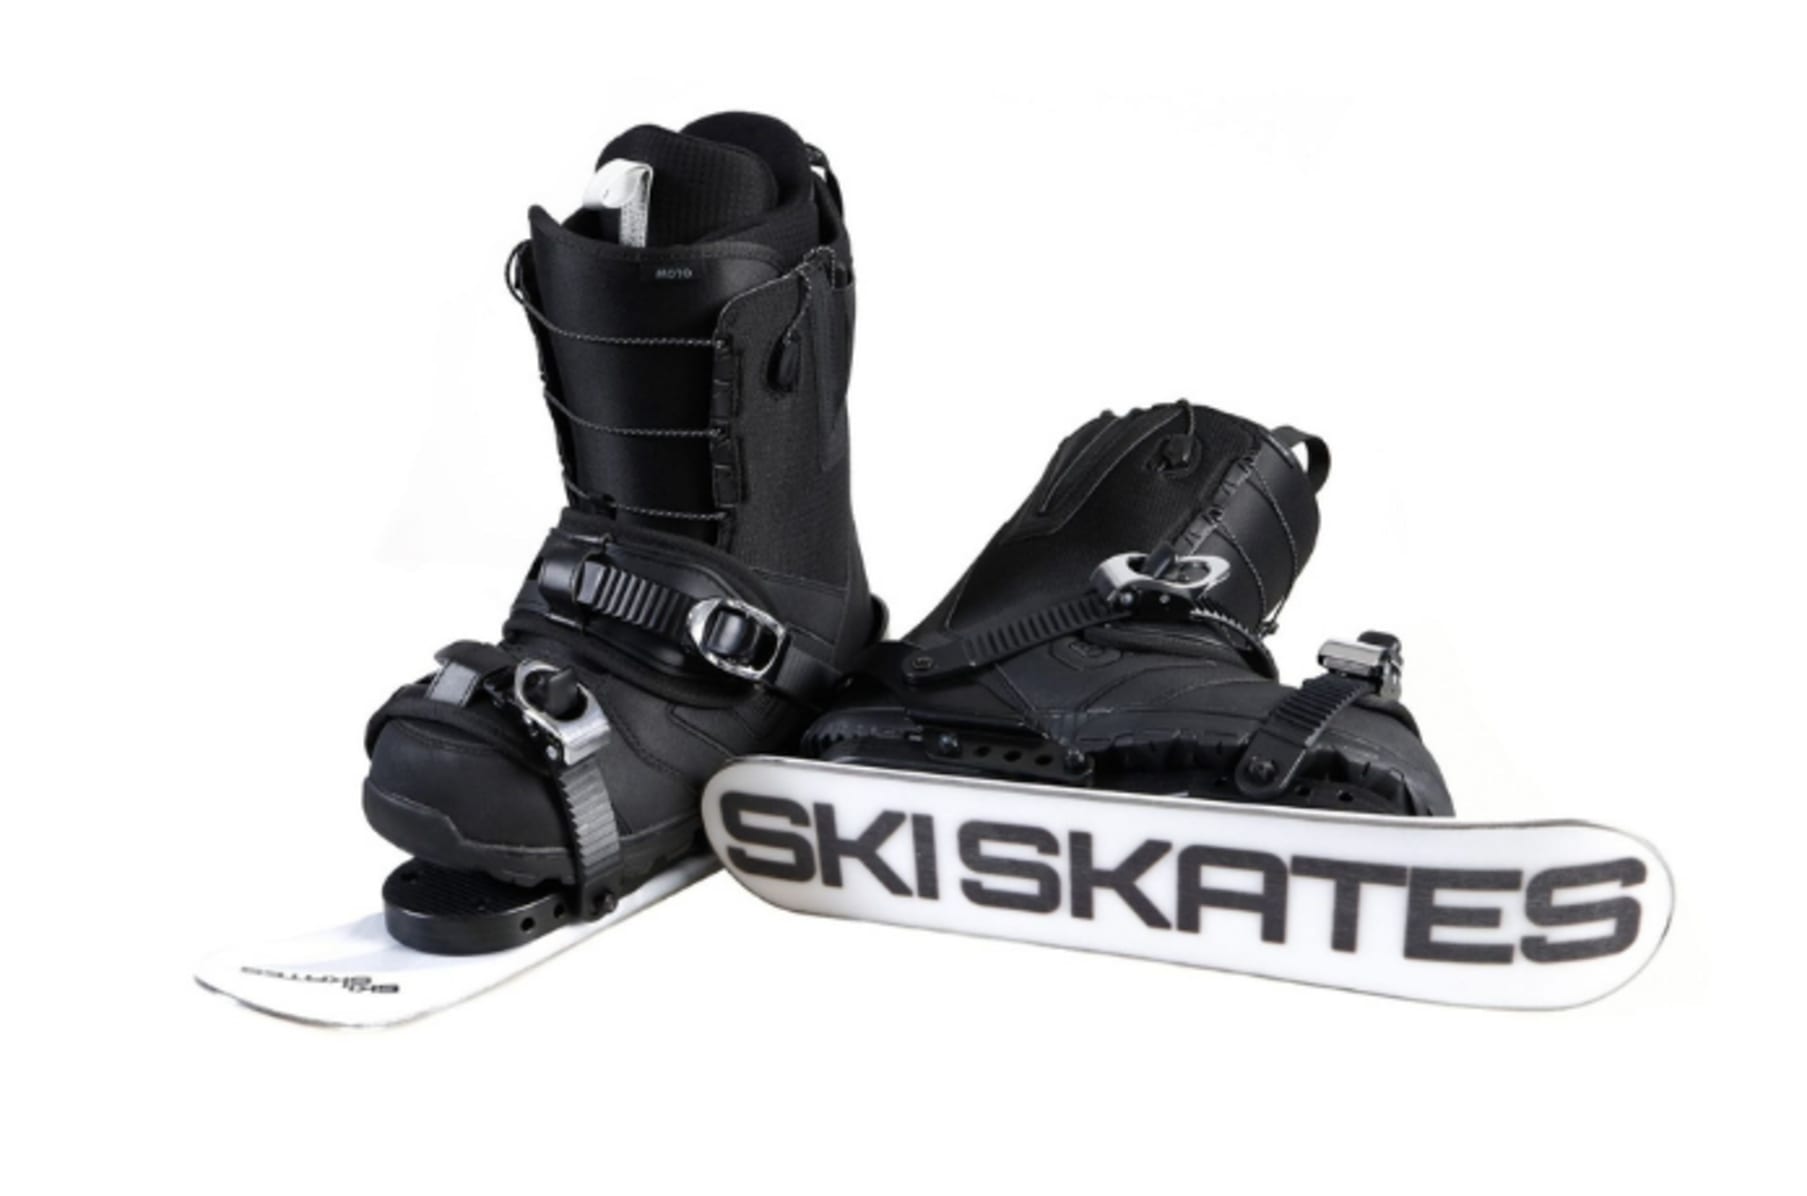 Skiskates 2 - World's Shortest Skis | Indiegogo